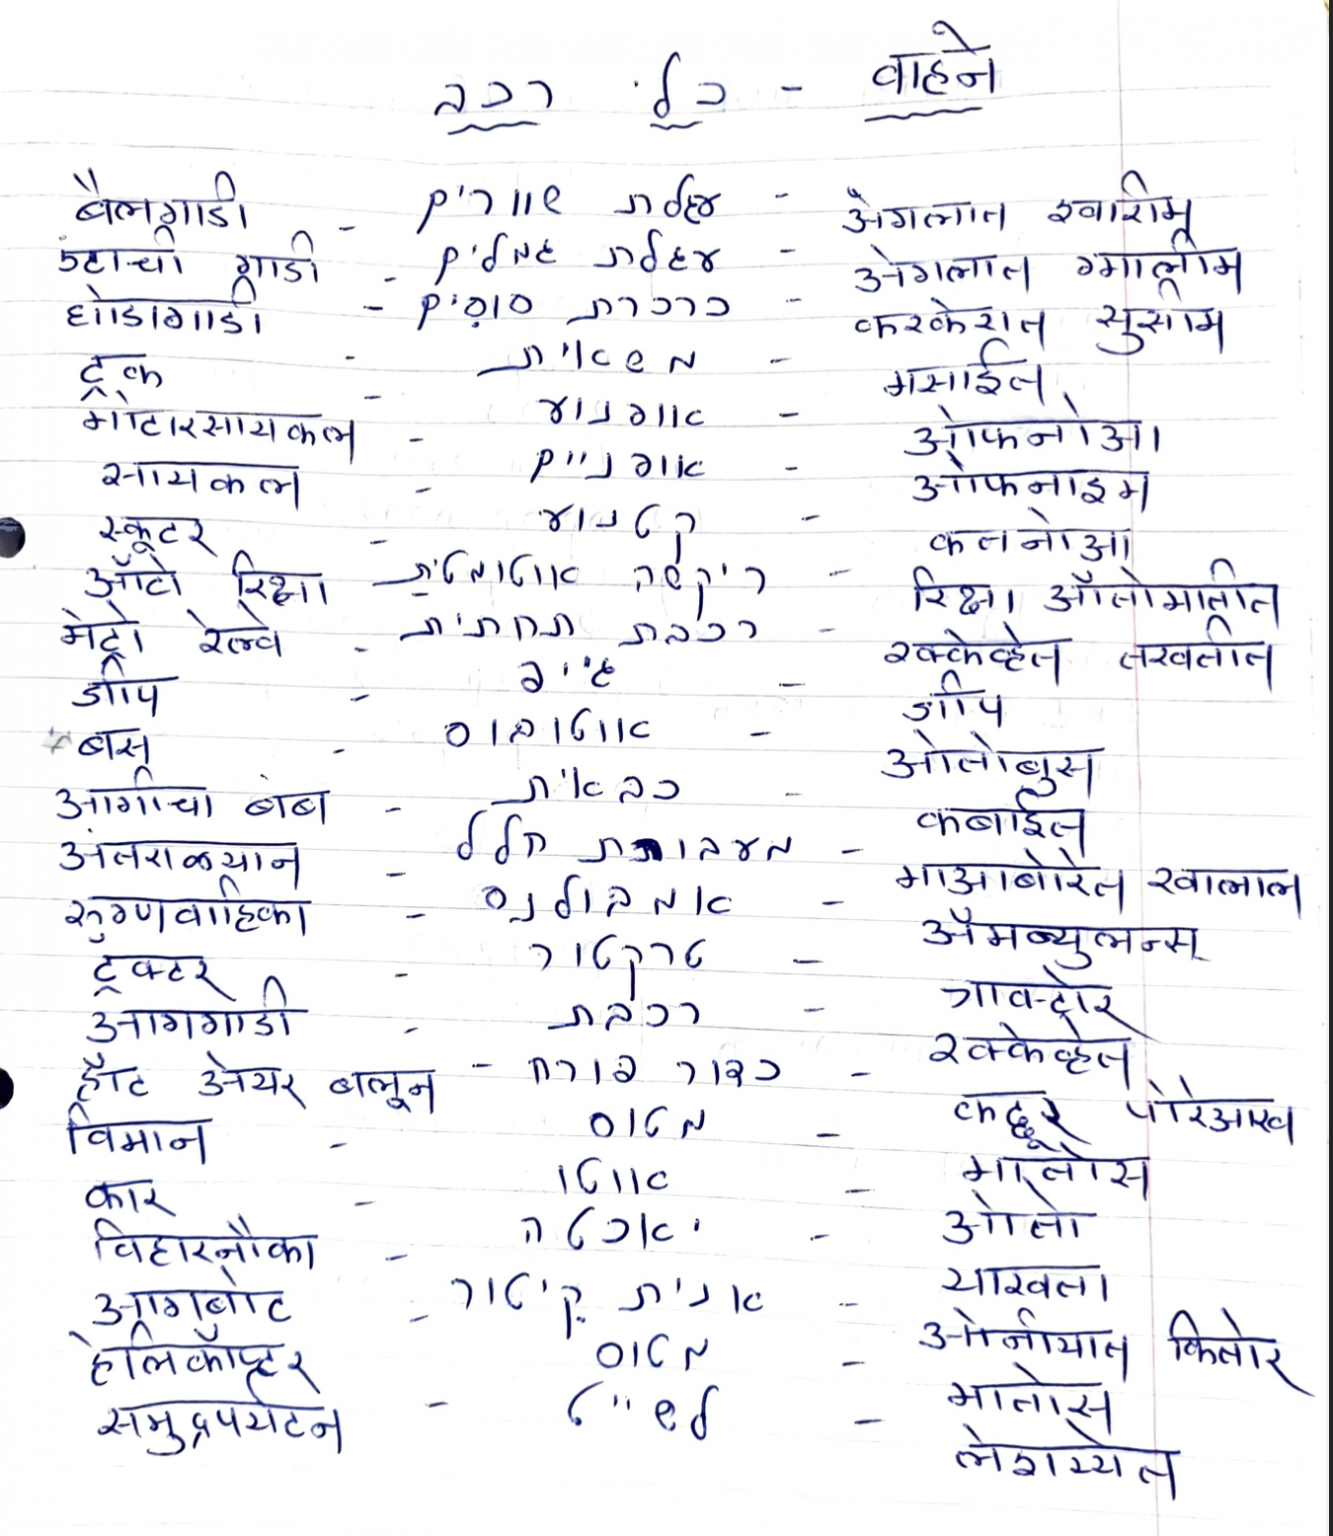 names-of-vehicles-in-marathi-and-hebrew-learn-marathi-with-kaushik